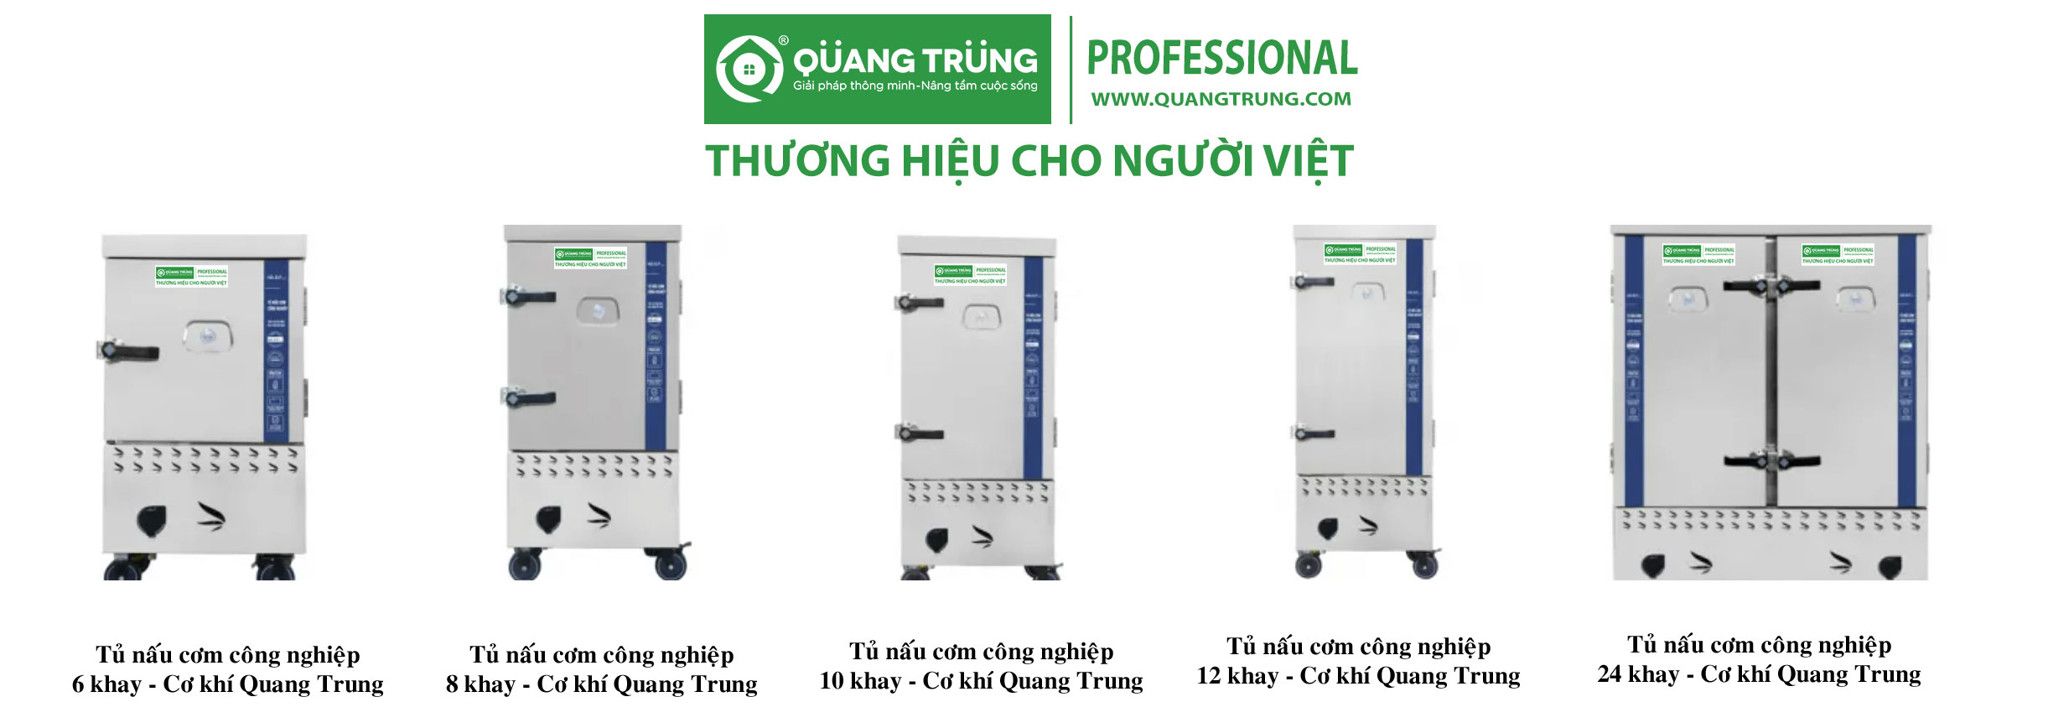 Tủ nấu cơm công nghiệp cơ khí Quang Trung